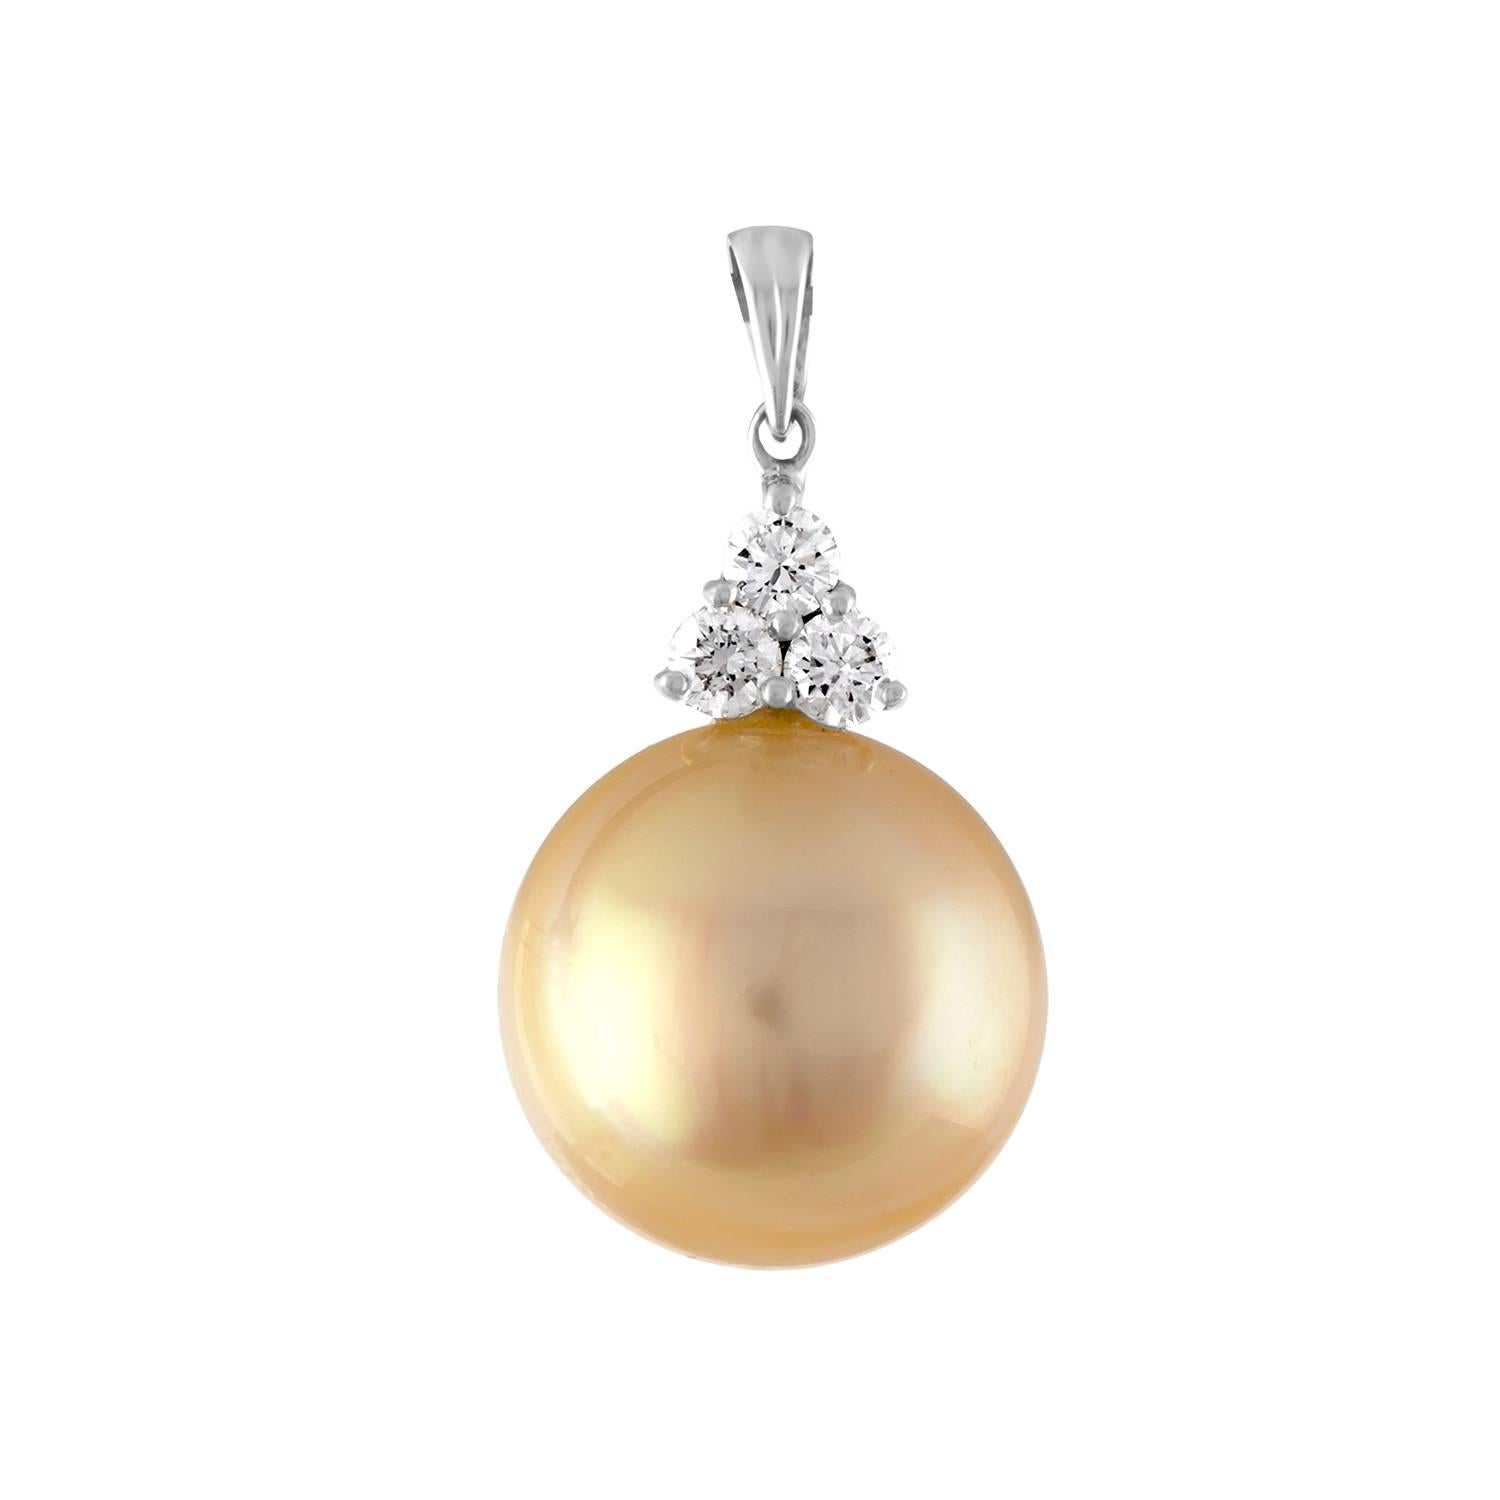 Collier de perles en or très inhabituel
Le collier est en or blanc 18K
Il y a 0.33 Carats  en diamants G SI
La perle de culture des mers du Sud mesure 14,00 mm
La chaîne est en or blanc 18K et mesure 16 pouces de long
La chaîne et le pendentif